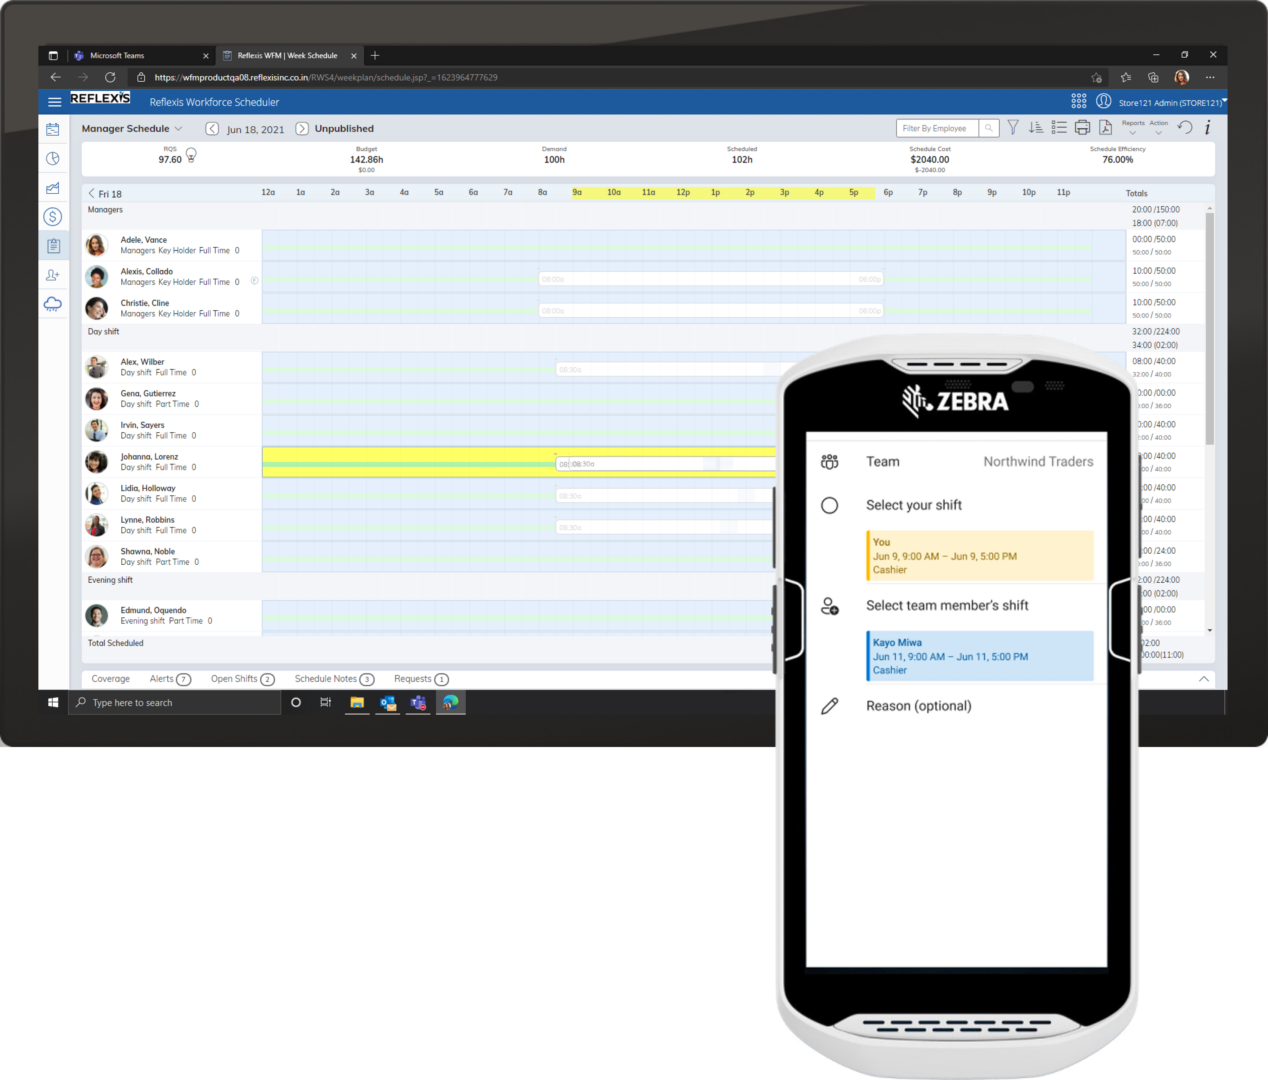 Pantalla de una tableta que muestra el sistema de administración de personal Reflexis de Zebra y pantalla de un dispositivo móvil que muestra Turnos en Teams dentro de un dispositivo Zebra; en ambas se muestra la misma información de cambio de turnos. 